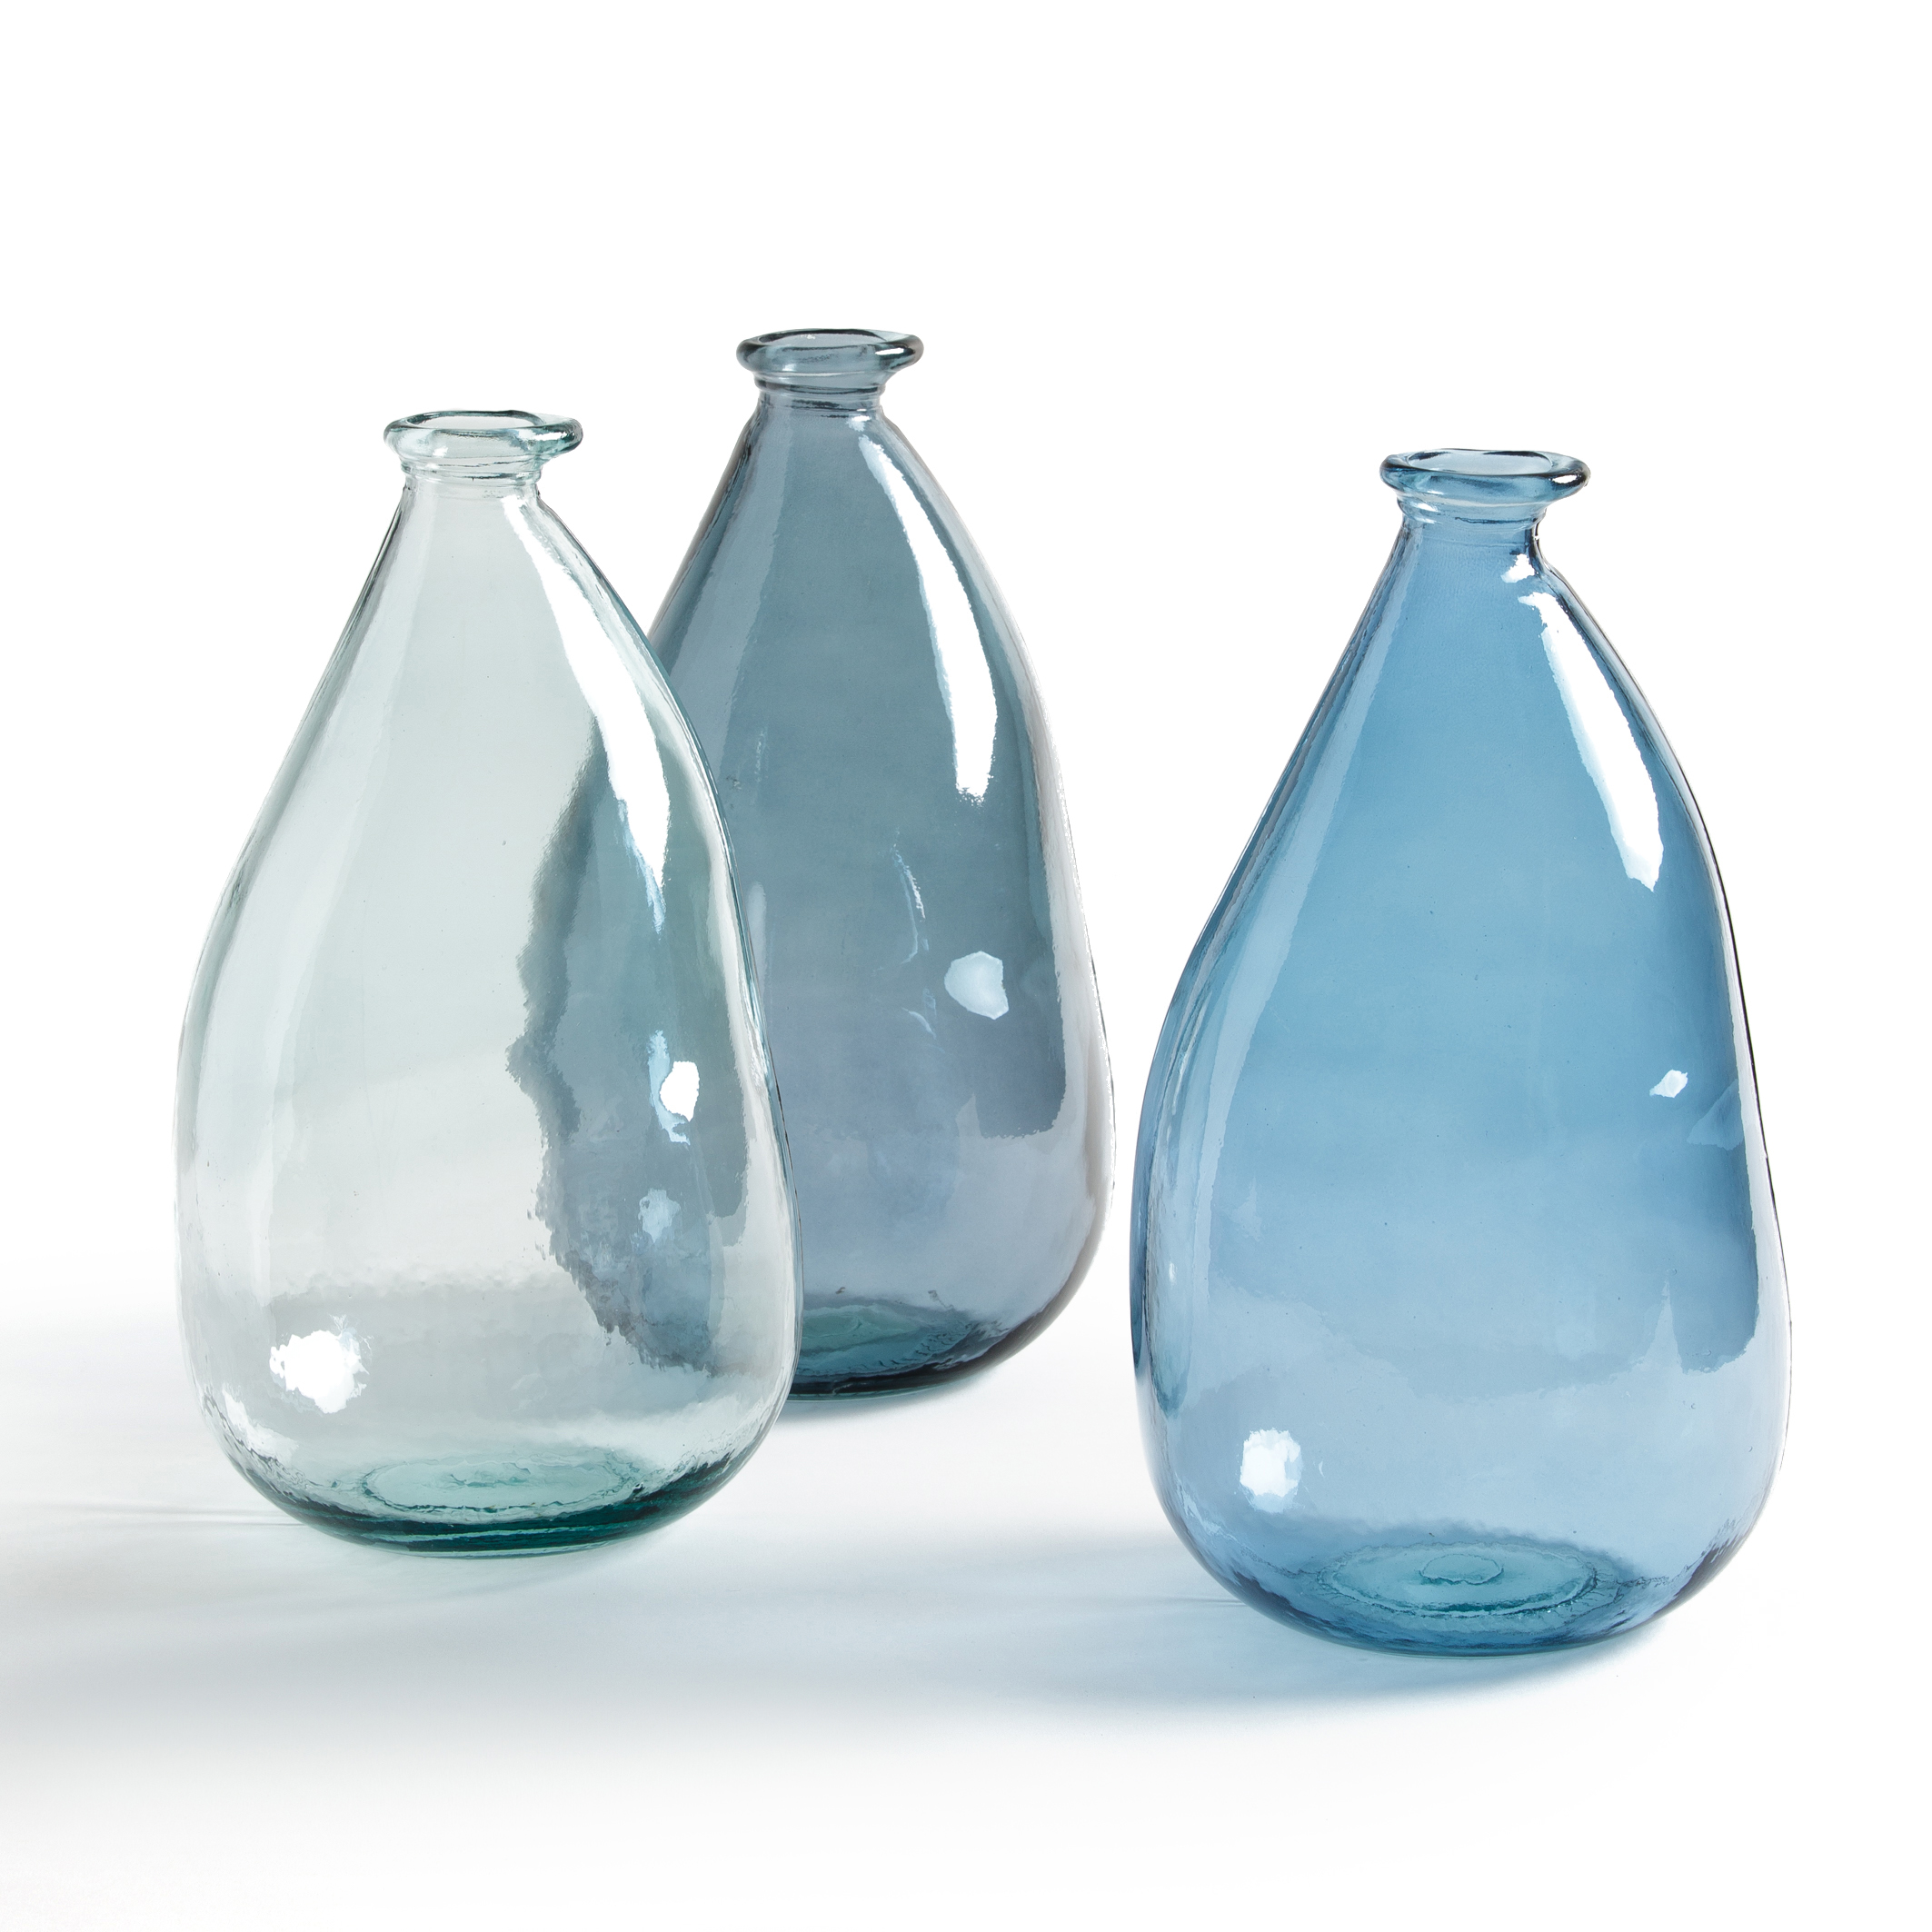 Стеклянный сосуд сложной формы заполнен. Стеклянные вазы. Стеклянные вазы и бутылки. Ваза бутыль стеклянная. Ваза бутылка стеклянная.